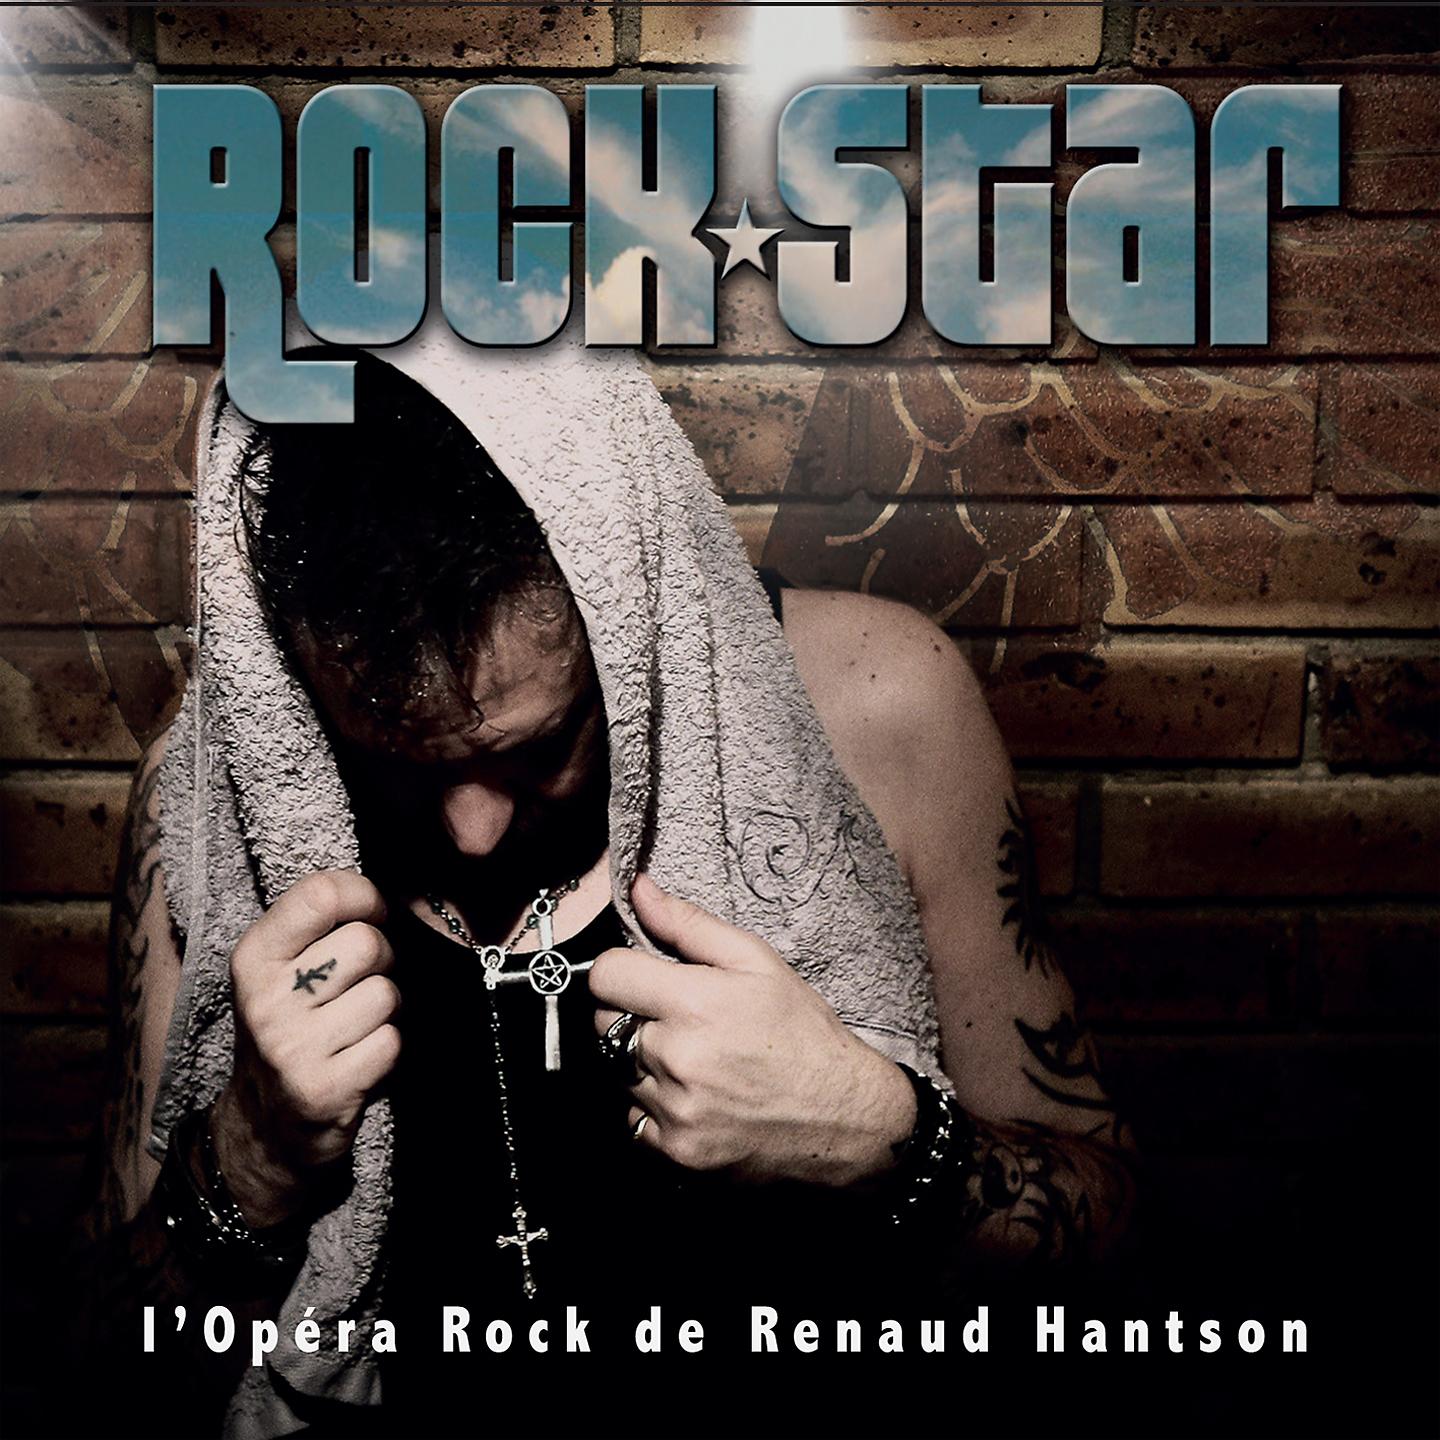 Постер альбома Rock Star